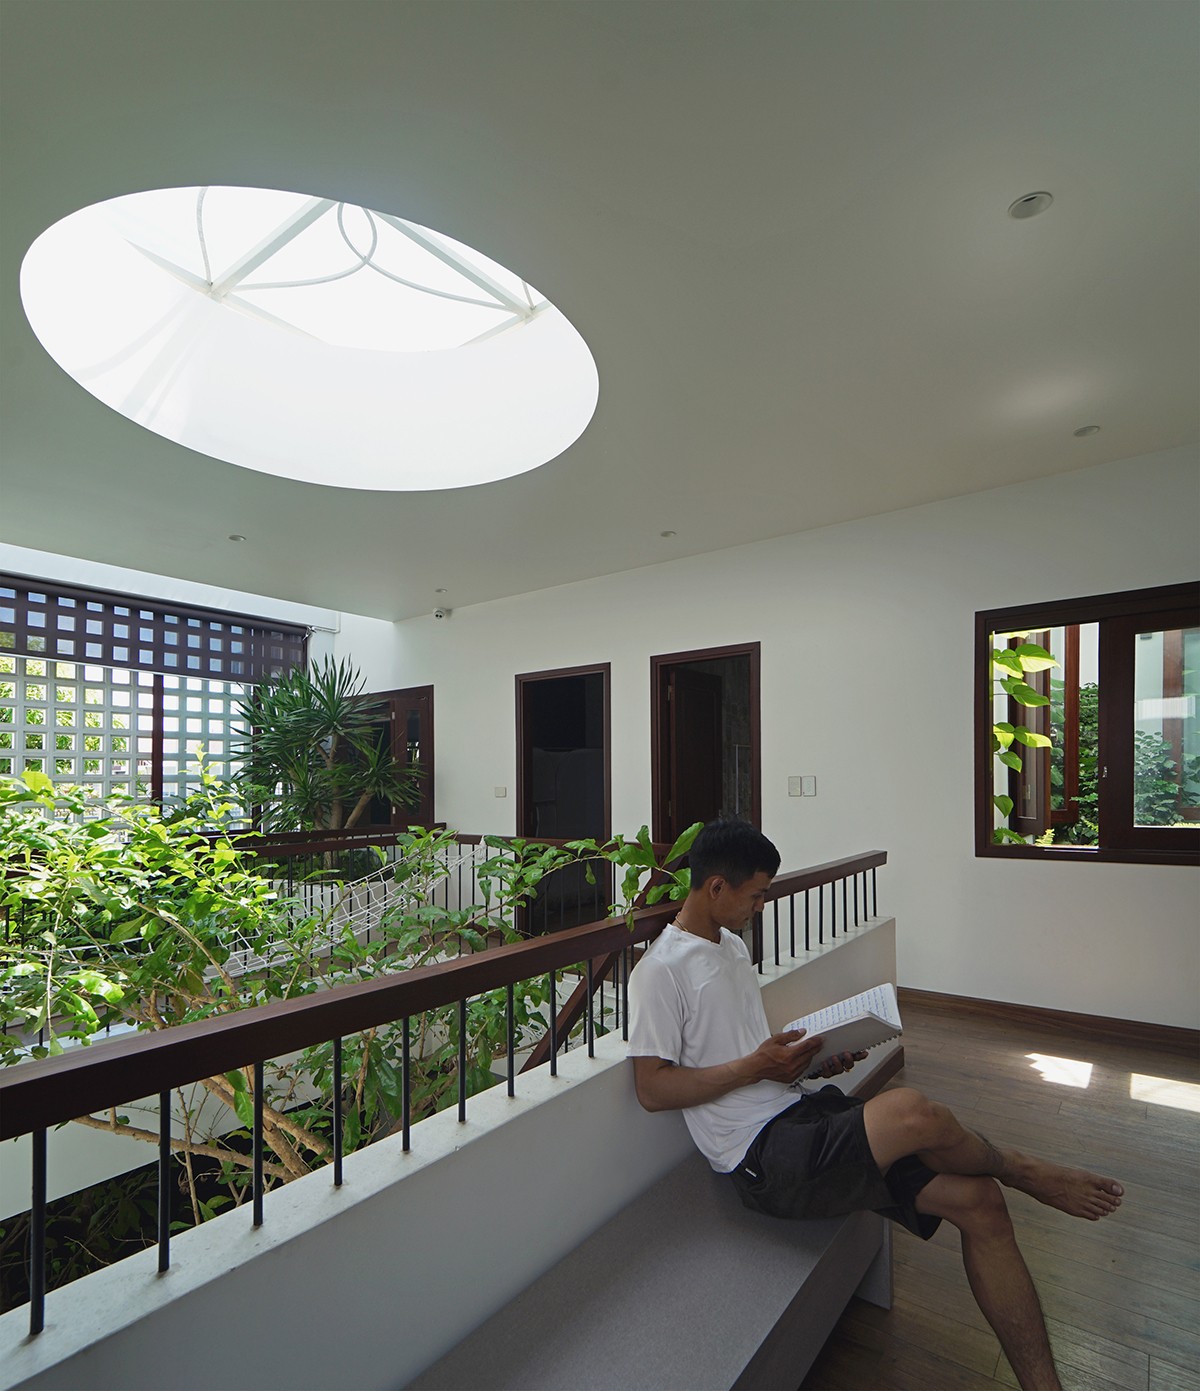 
Căn nhà được thiết kế đặc biệt giúp cho không gian sống bên trong luôn có ánh nắng tự nhiên chan hòa khắp nơi, len lỏi đến các phòng công năng bên trong căn nhà.
